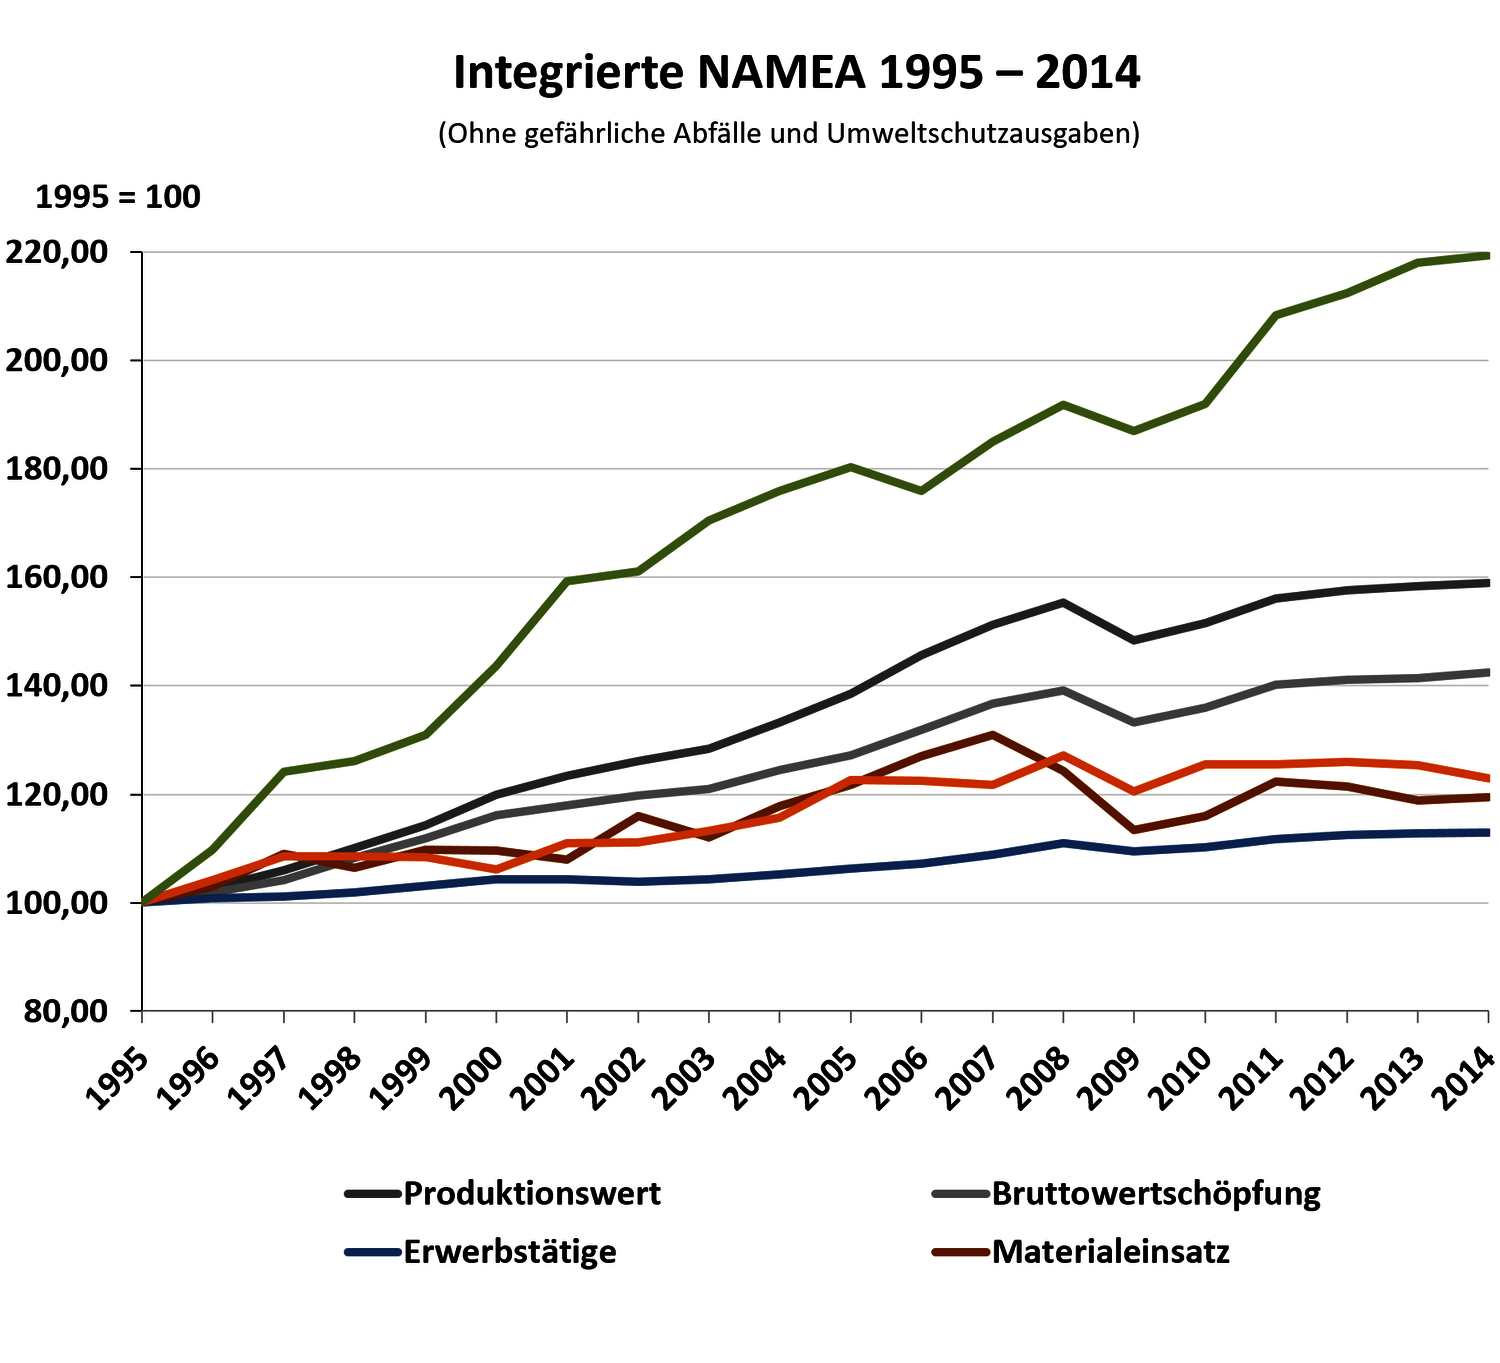 Abbildung mit Daten aus der Integrierten NAMEA in Österreich im Zeitraum 1995 bis 2014